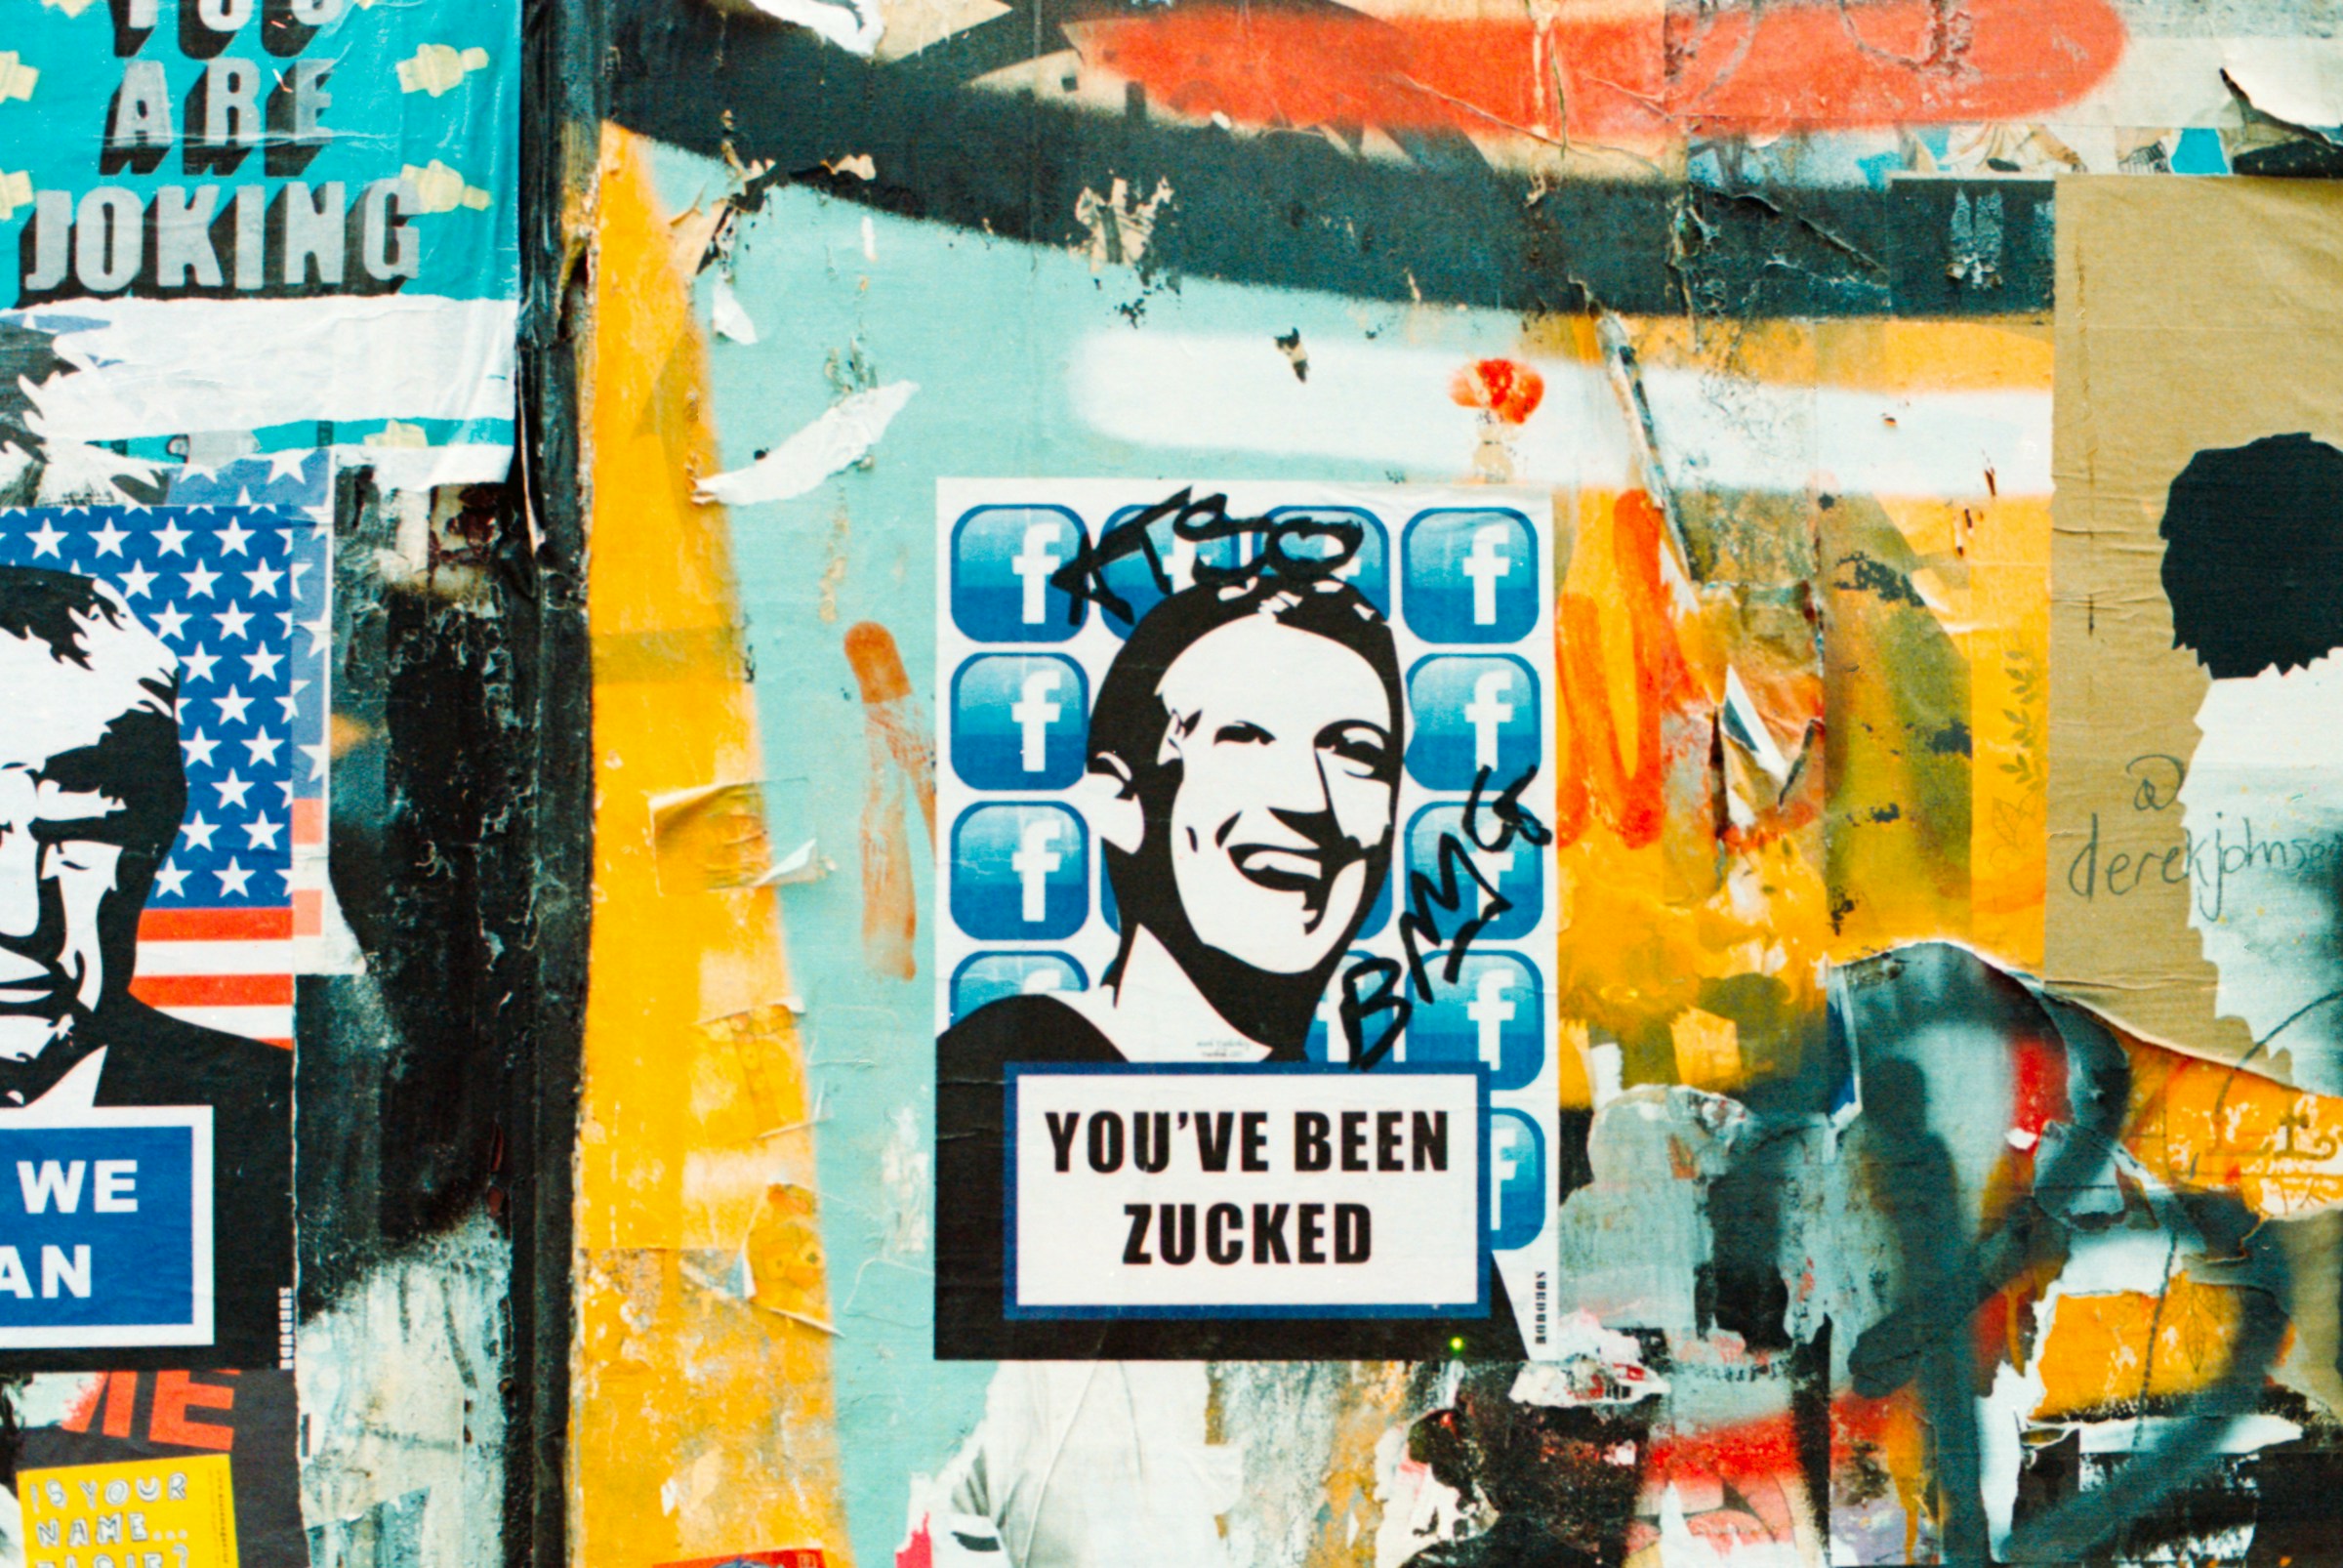 Mark Zuckerberg's sticker